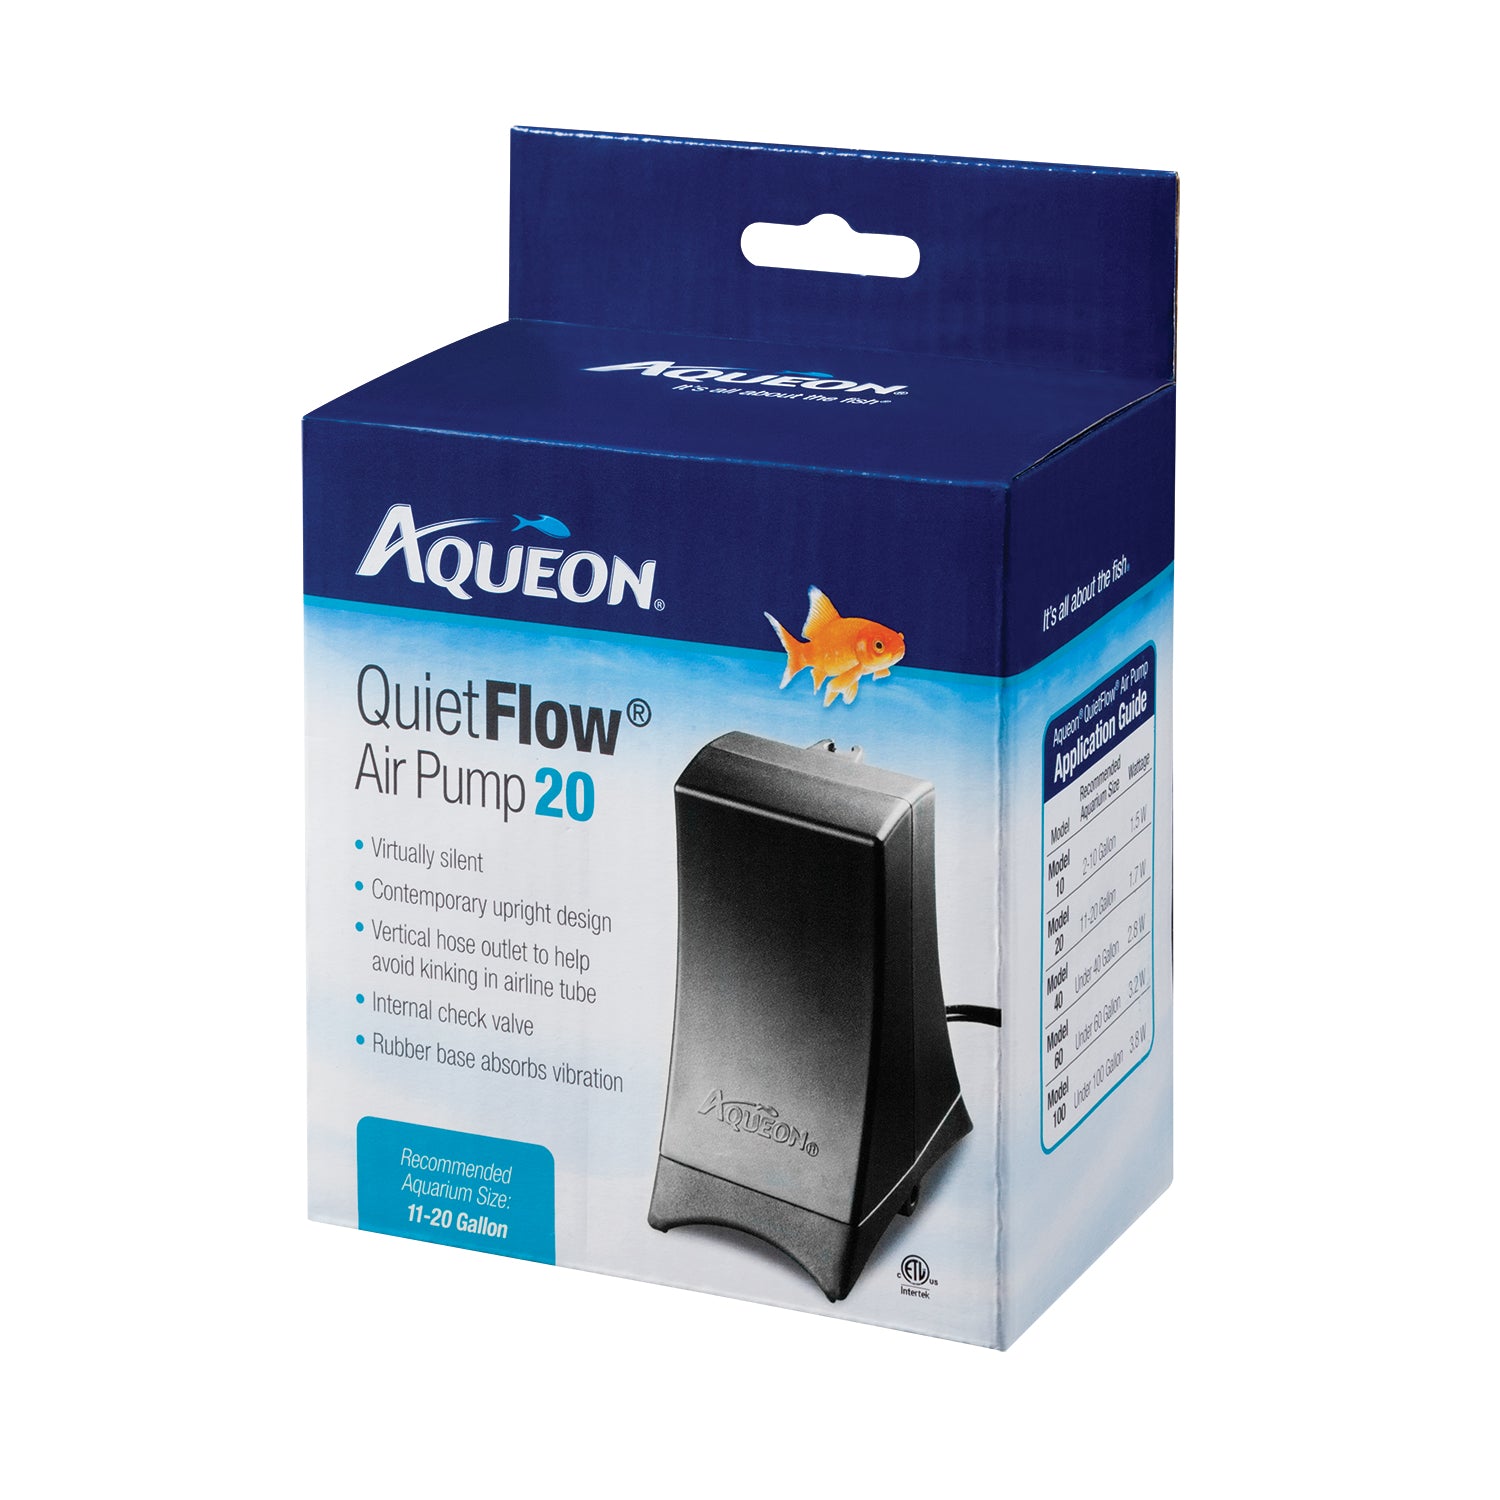 Aqueon Quiet Flow Air Pump 20